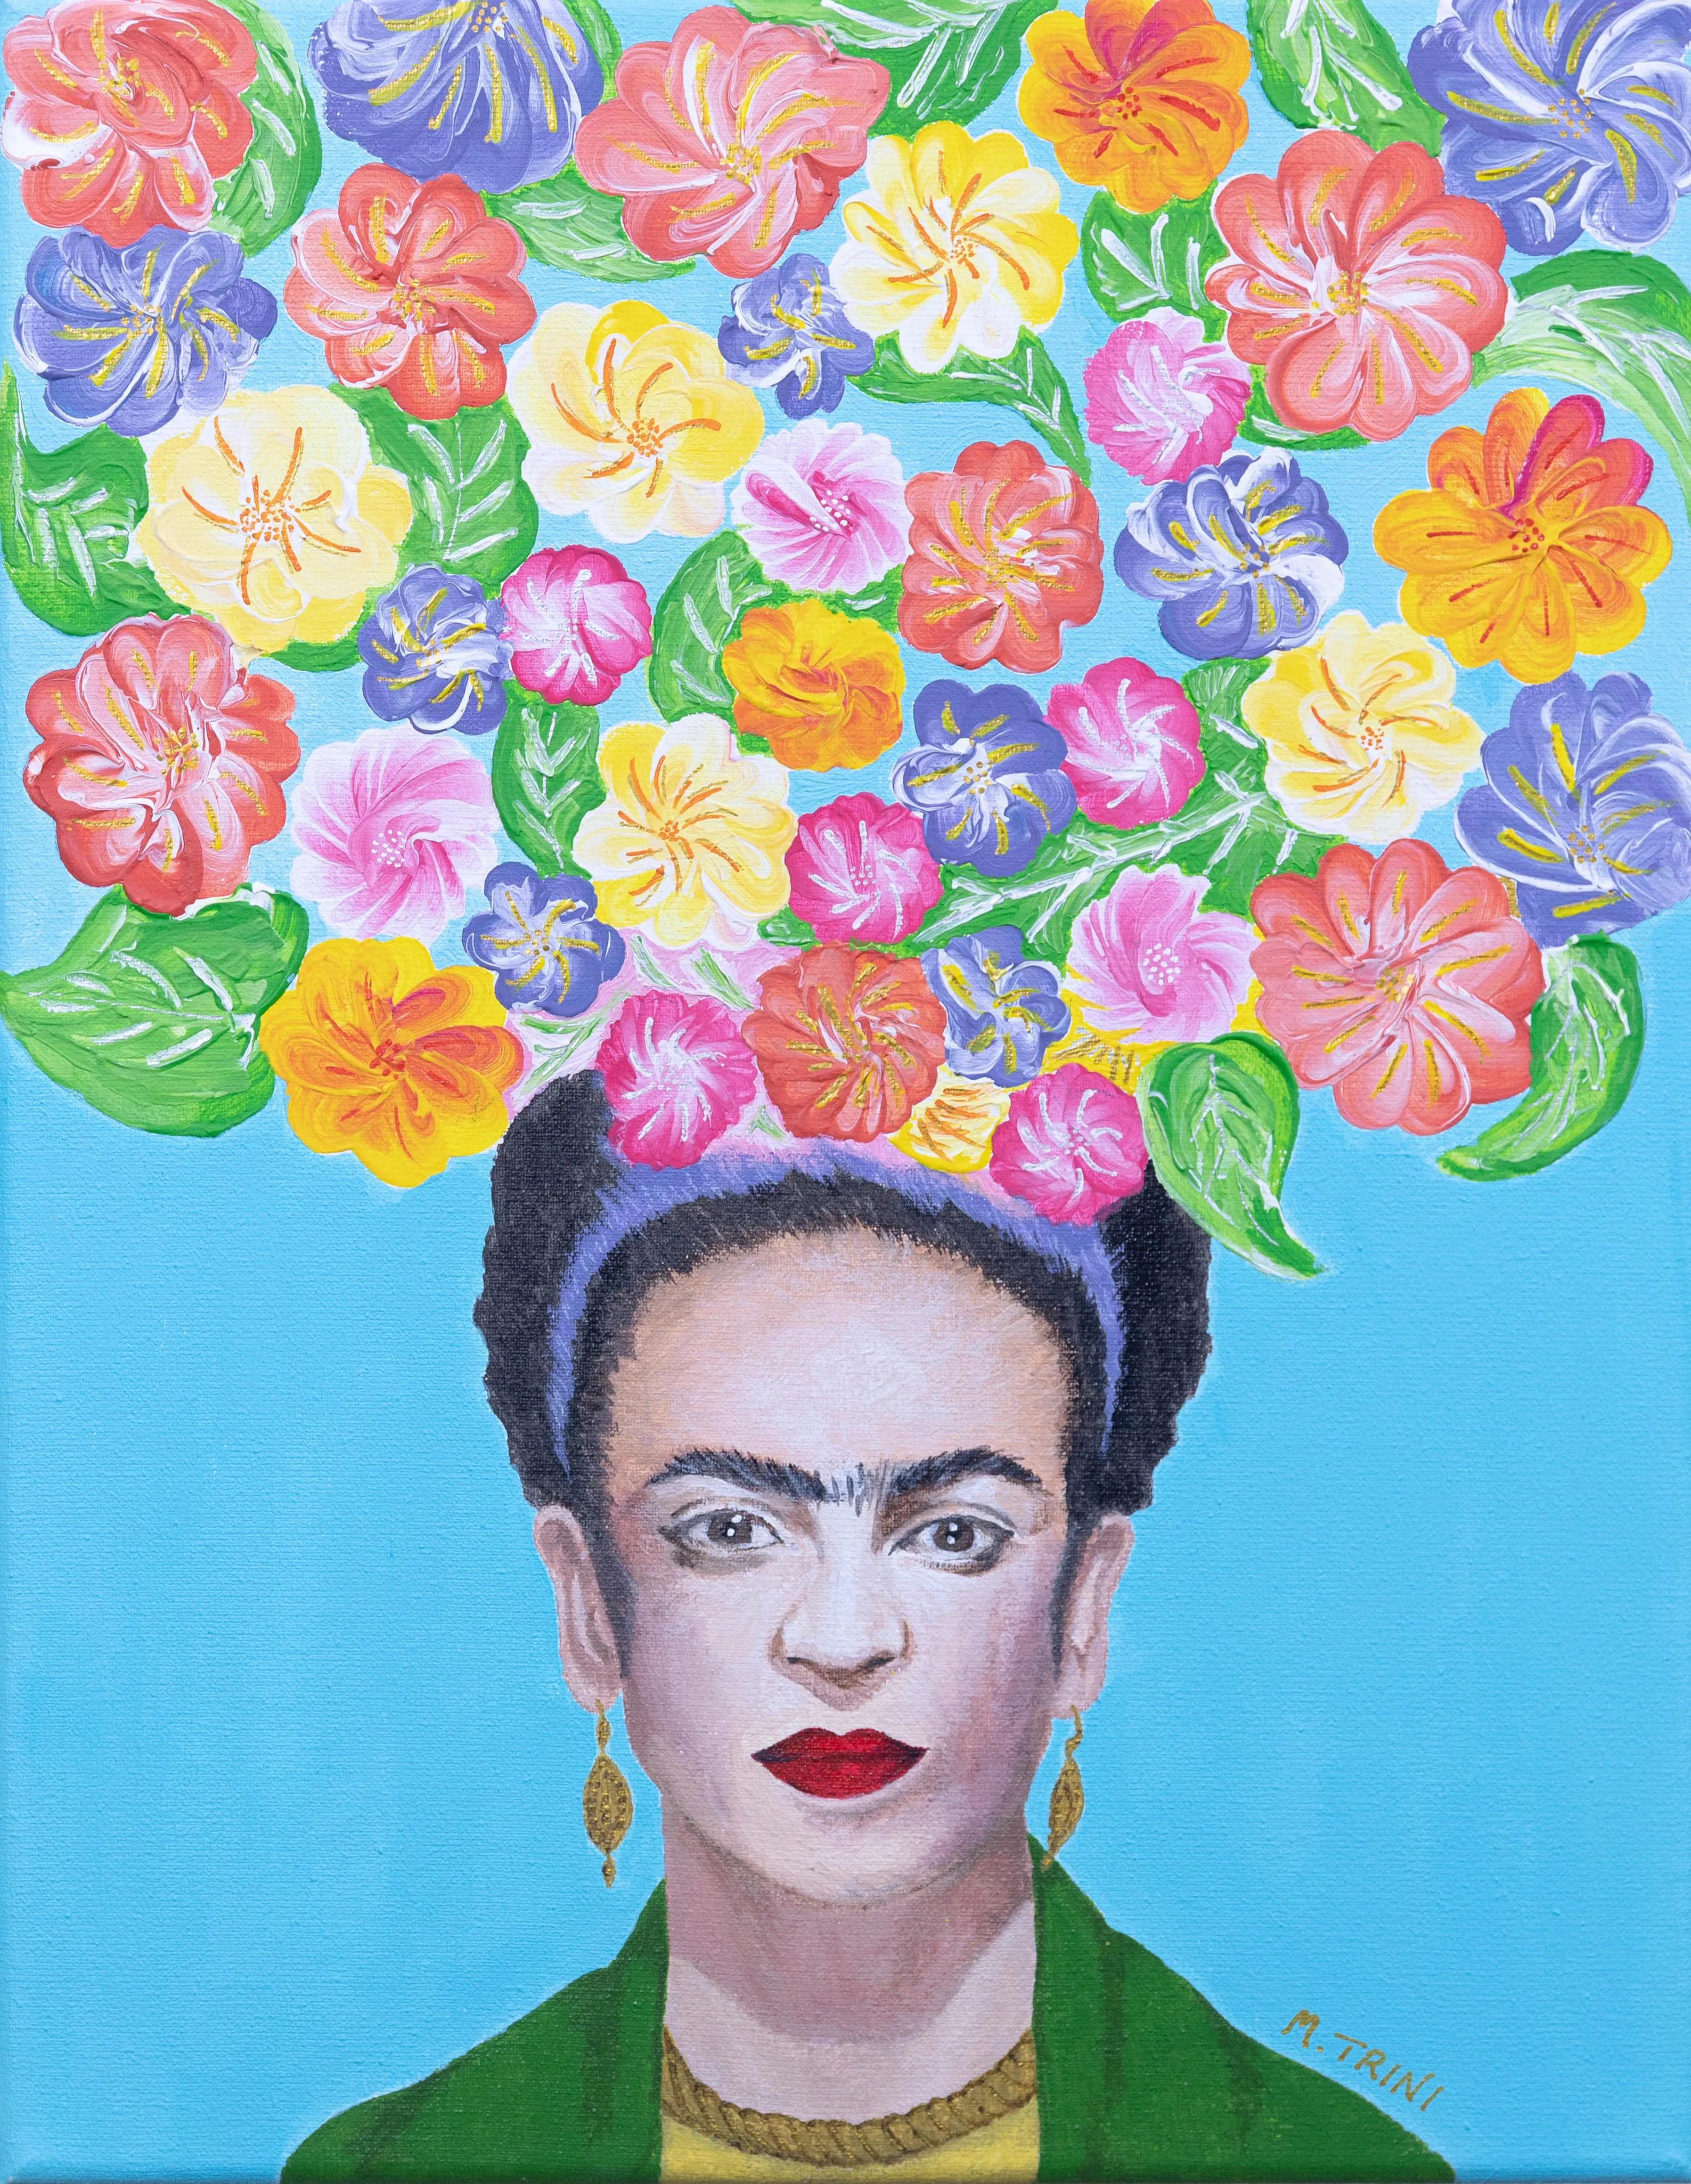 Dolor color y vida - Crazy Art - Frida Khalo cuadro retrato (1).jpg